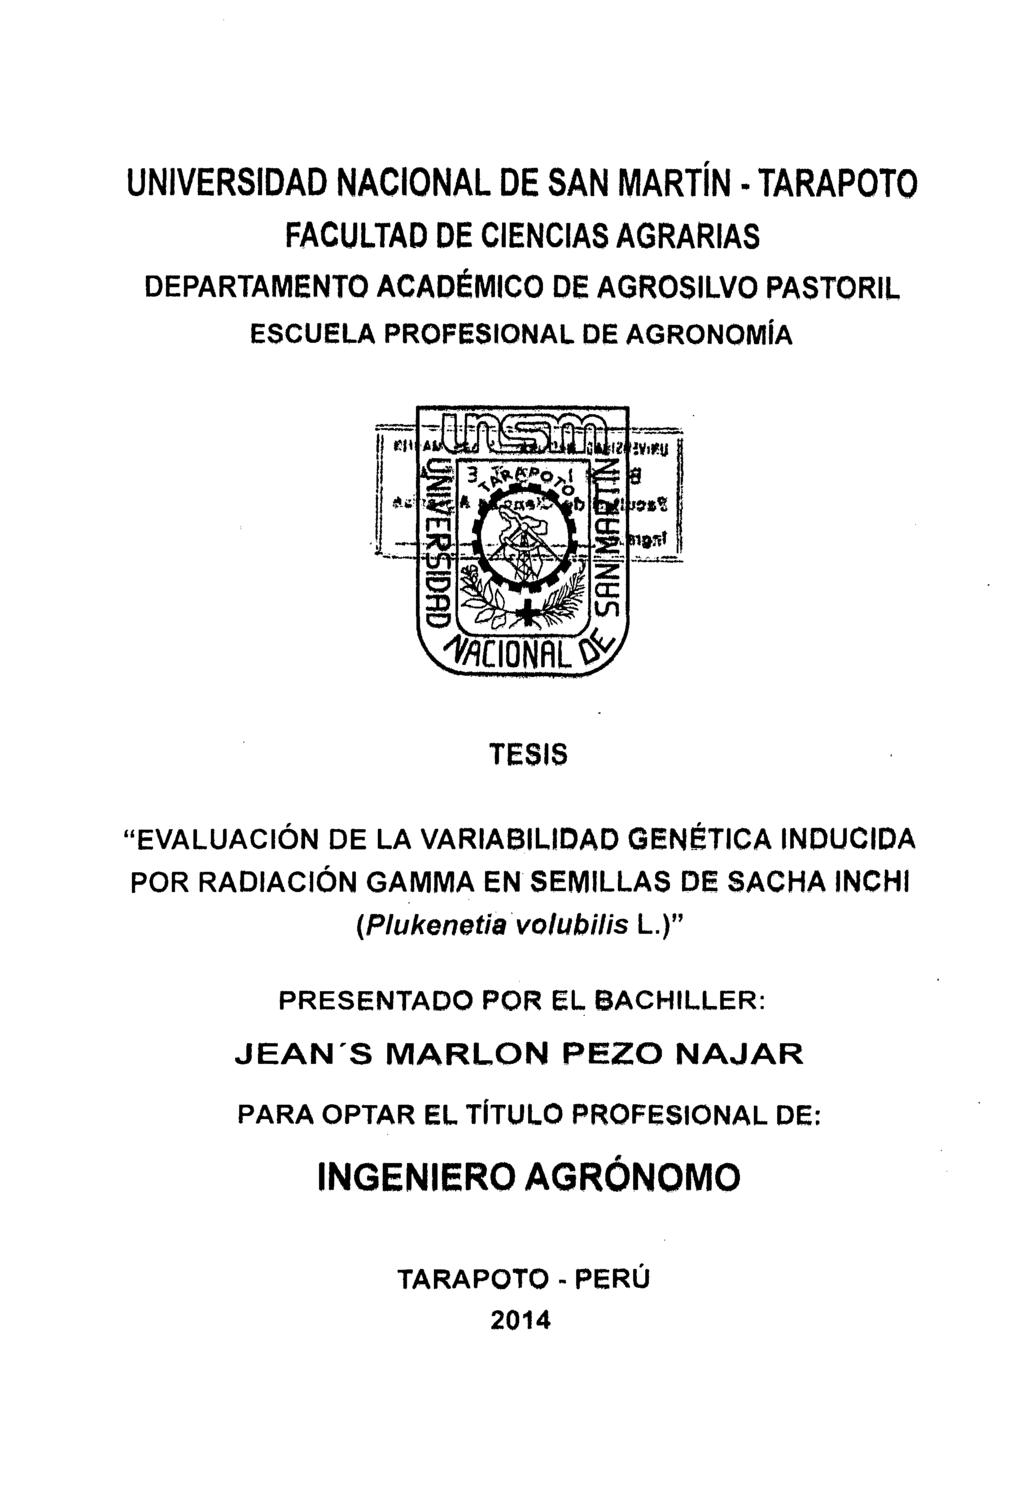 UNIVERSIDAD NACIONAL DE SAN MARTÍN TARAPOTO FACULTAD DE CIENCIAS AGRARIAS DEPARTAMENTO ACADÉMICO DE AGROSILVO PASTORIL ESCUELA PROFESIONAL DE AGRONOMÍA TESIS "EVALUACIÓN DE LA VARIABILIDAD GENÉTICA